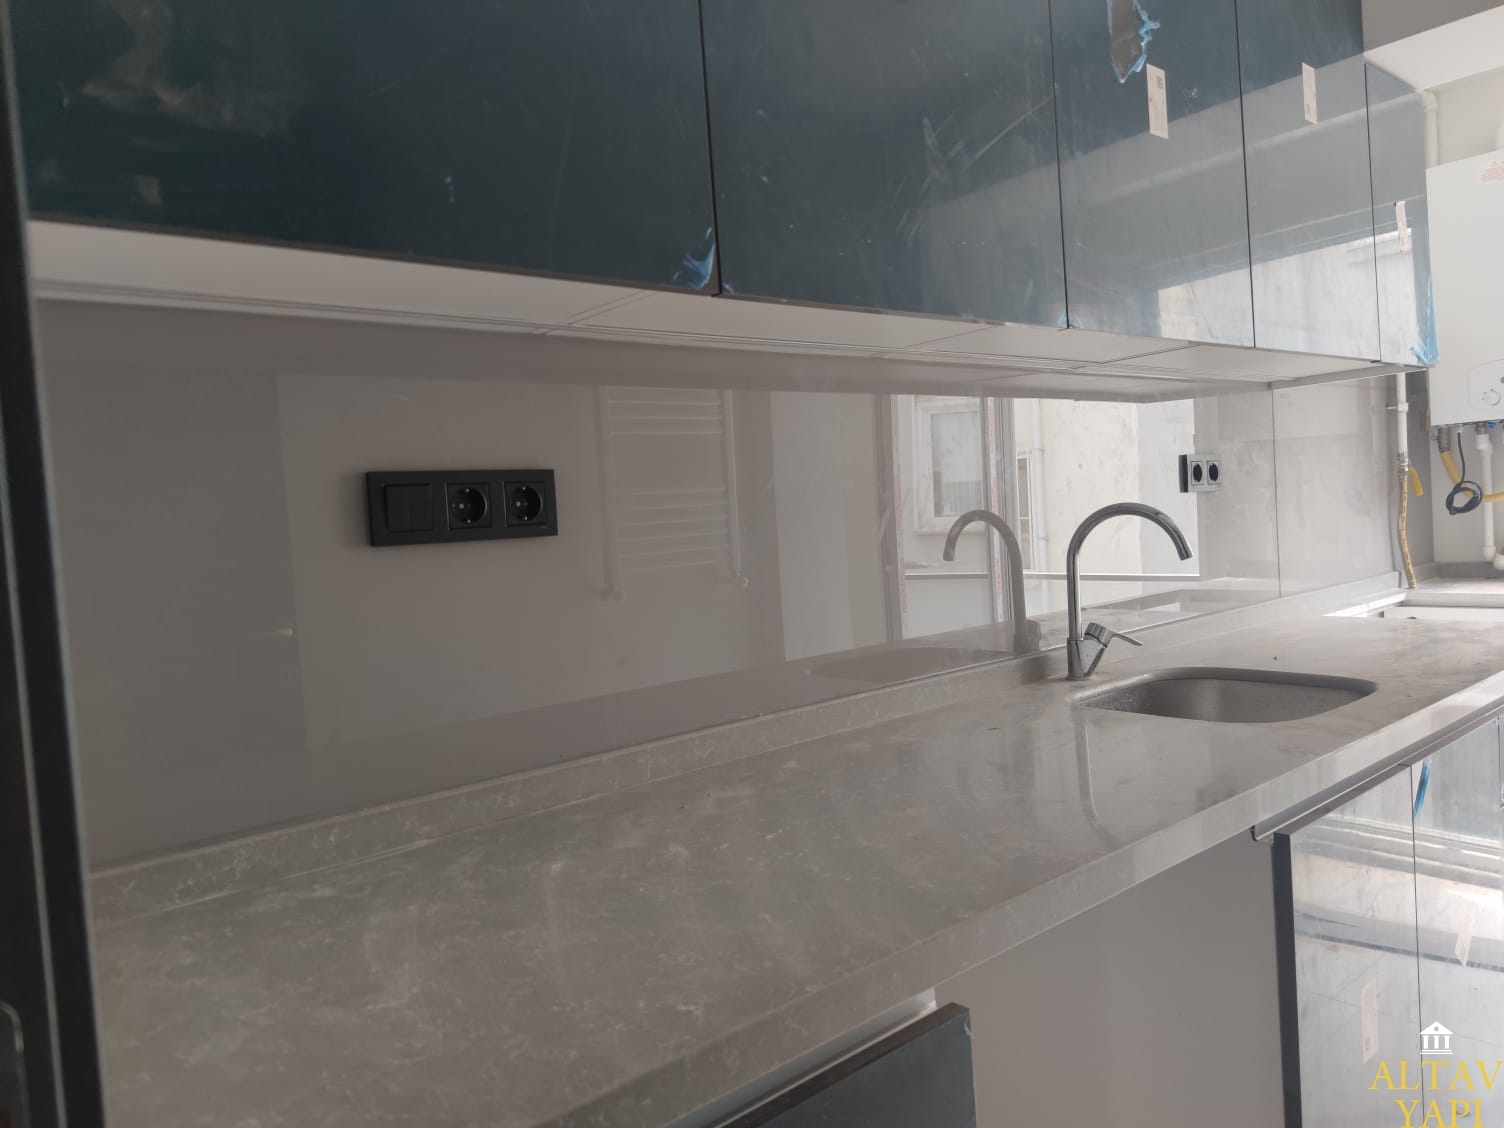 Mutfak tezgah arasý beyaz cam panel